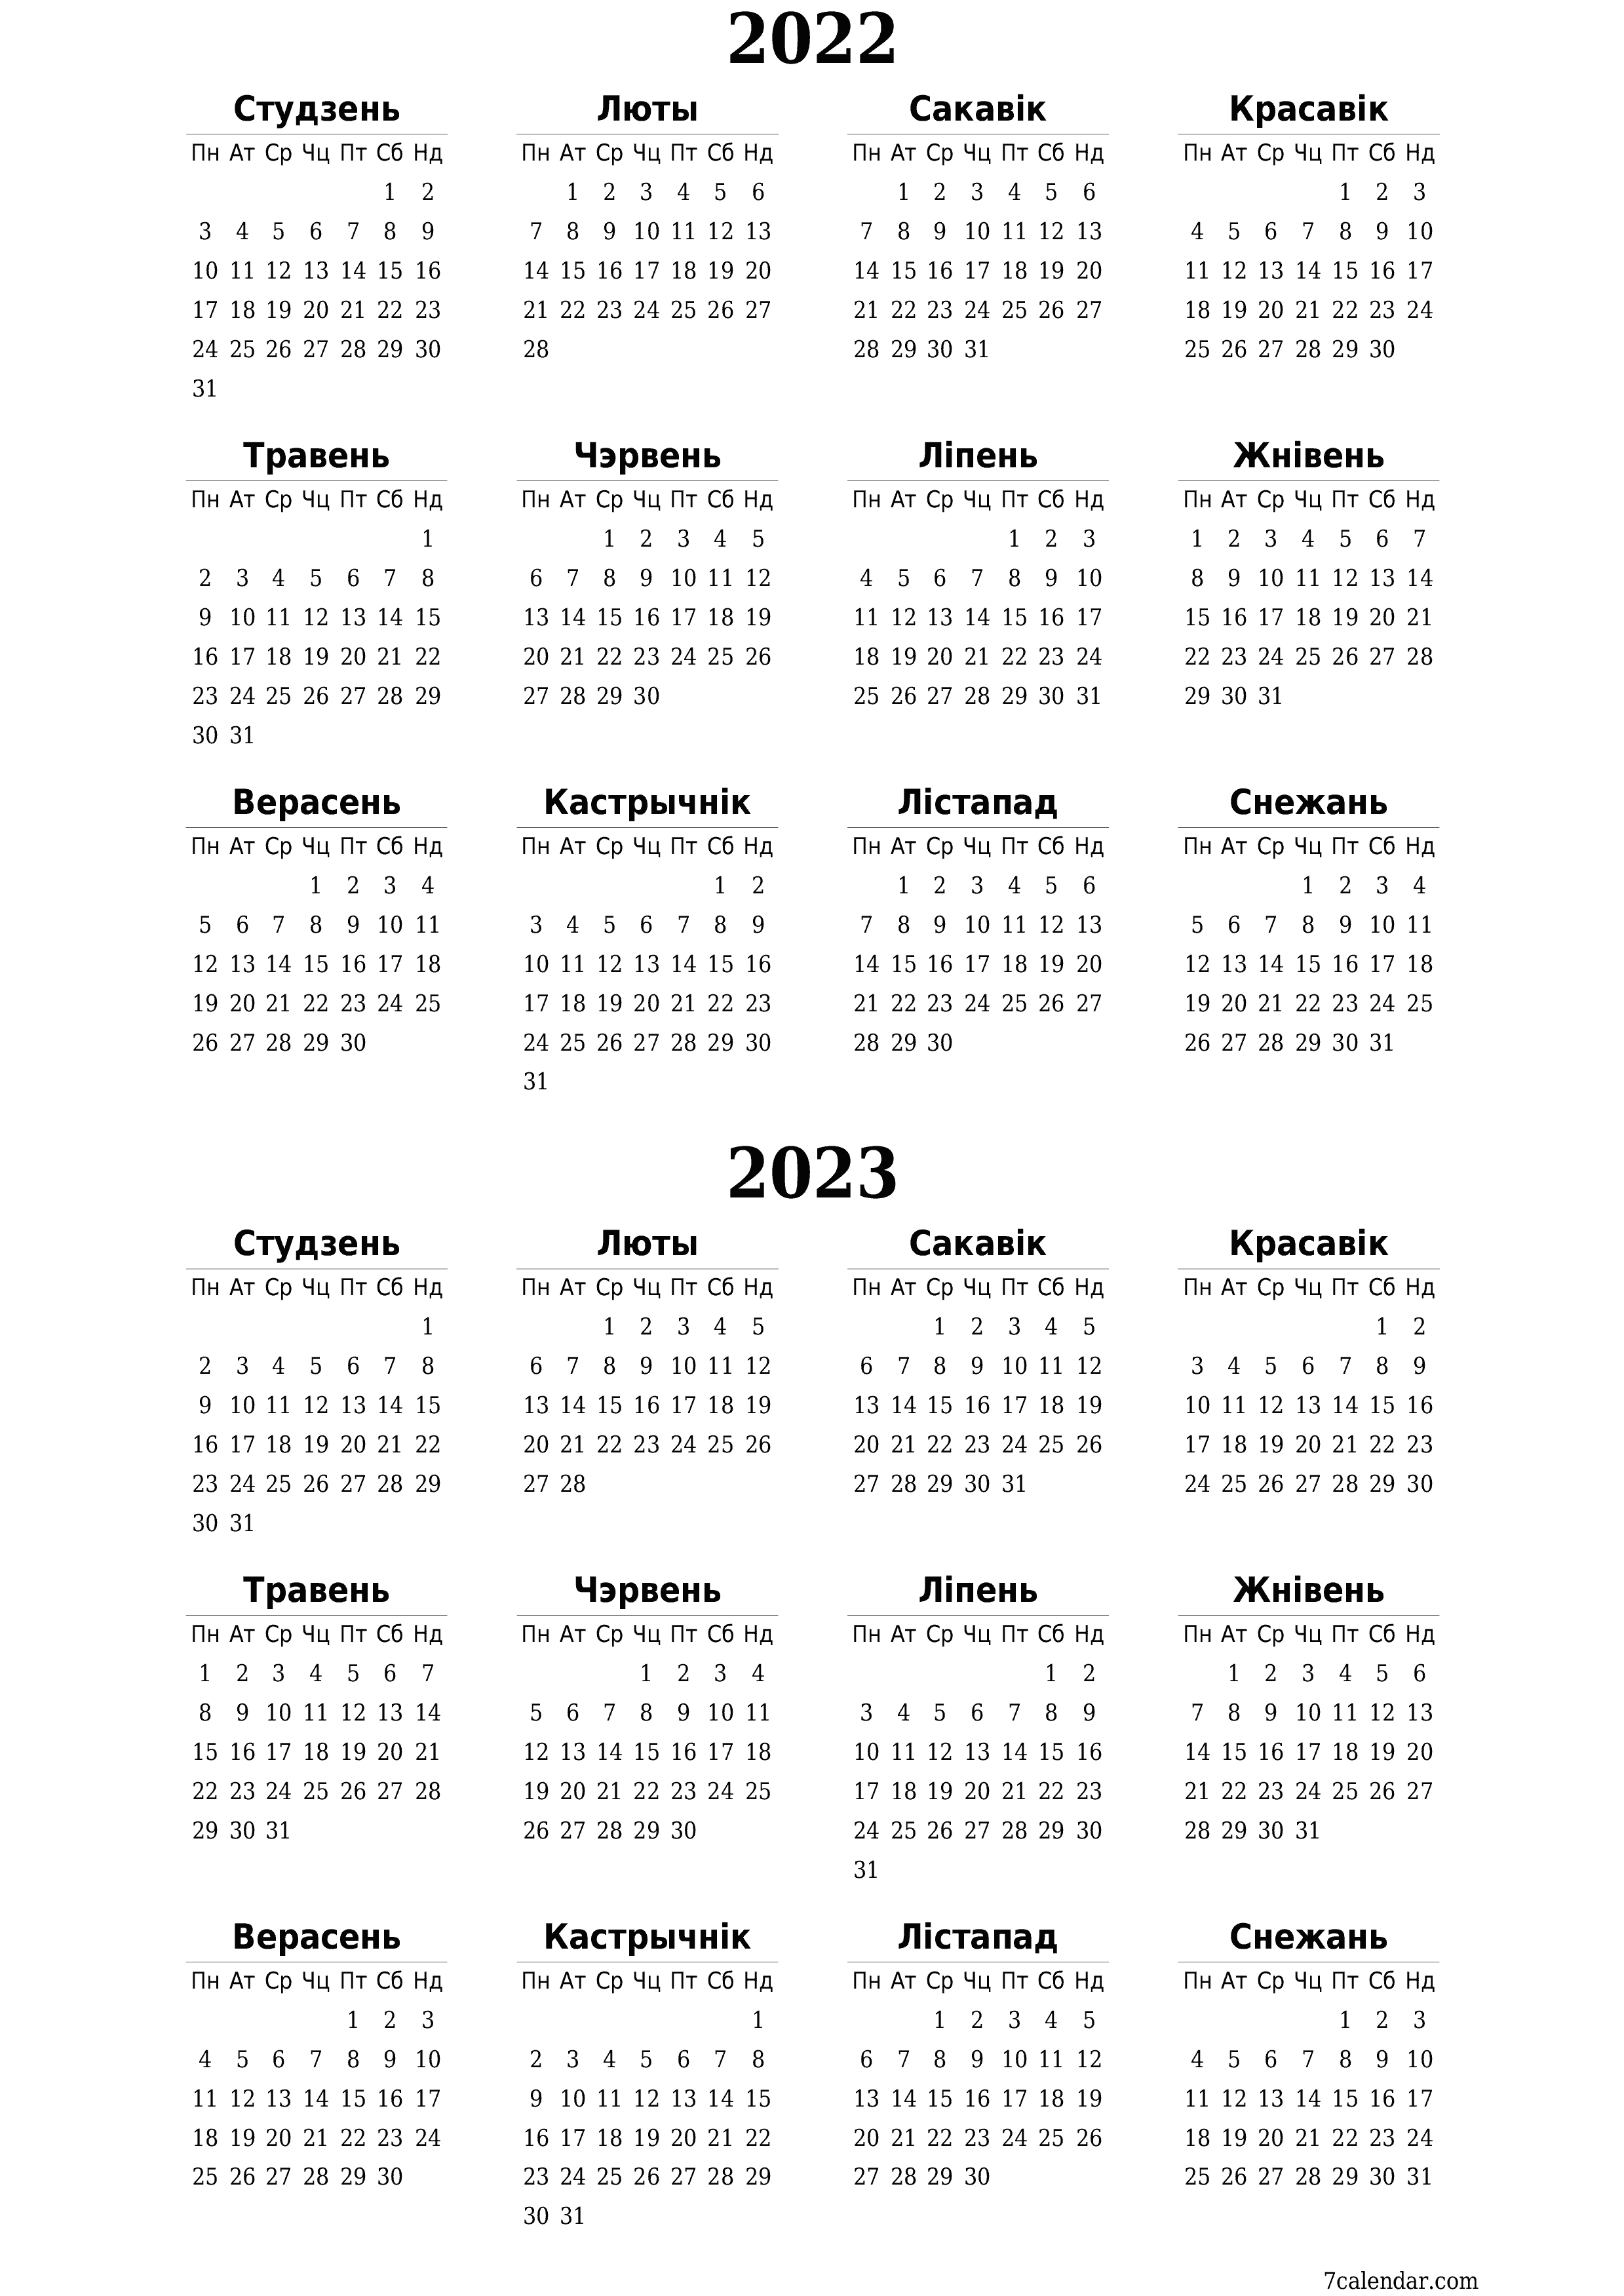  для друку насценны шаблон календара бясплатны вертыкальны Штогадовы каляндар Снежань (Снеж) 2022